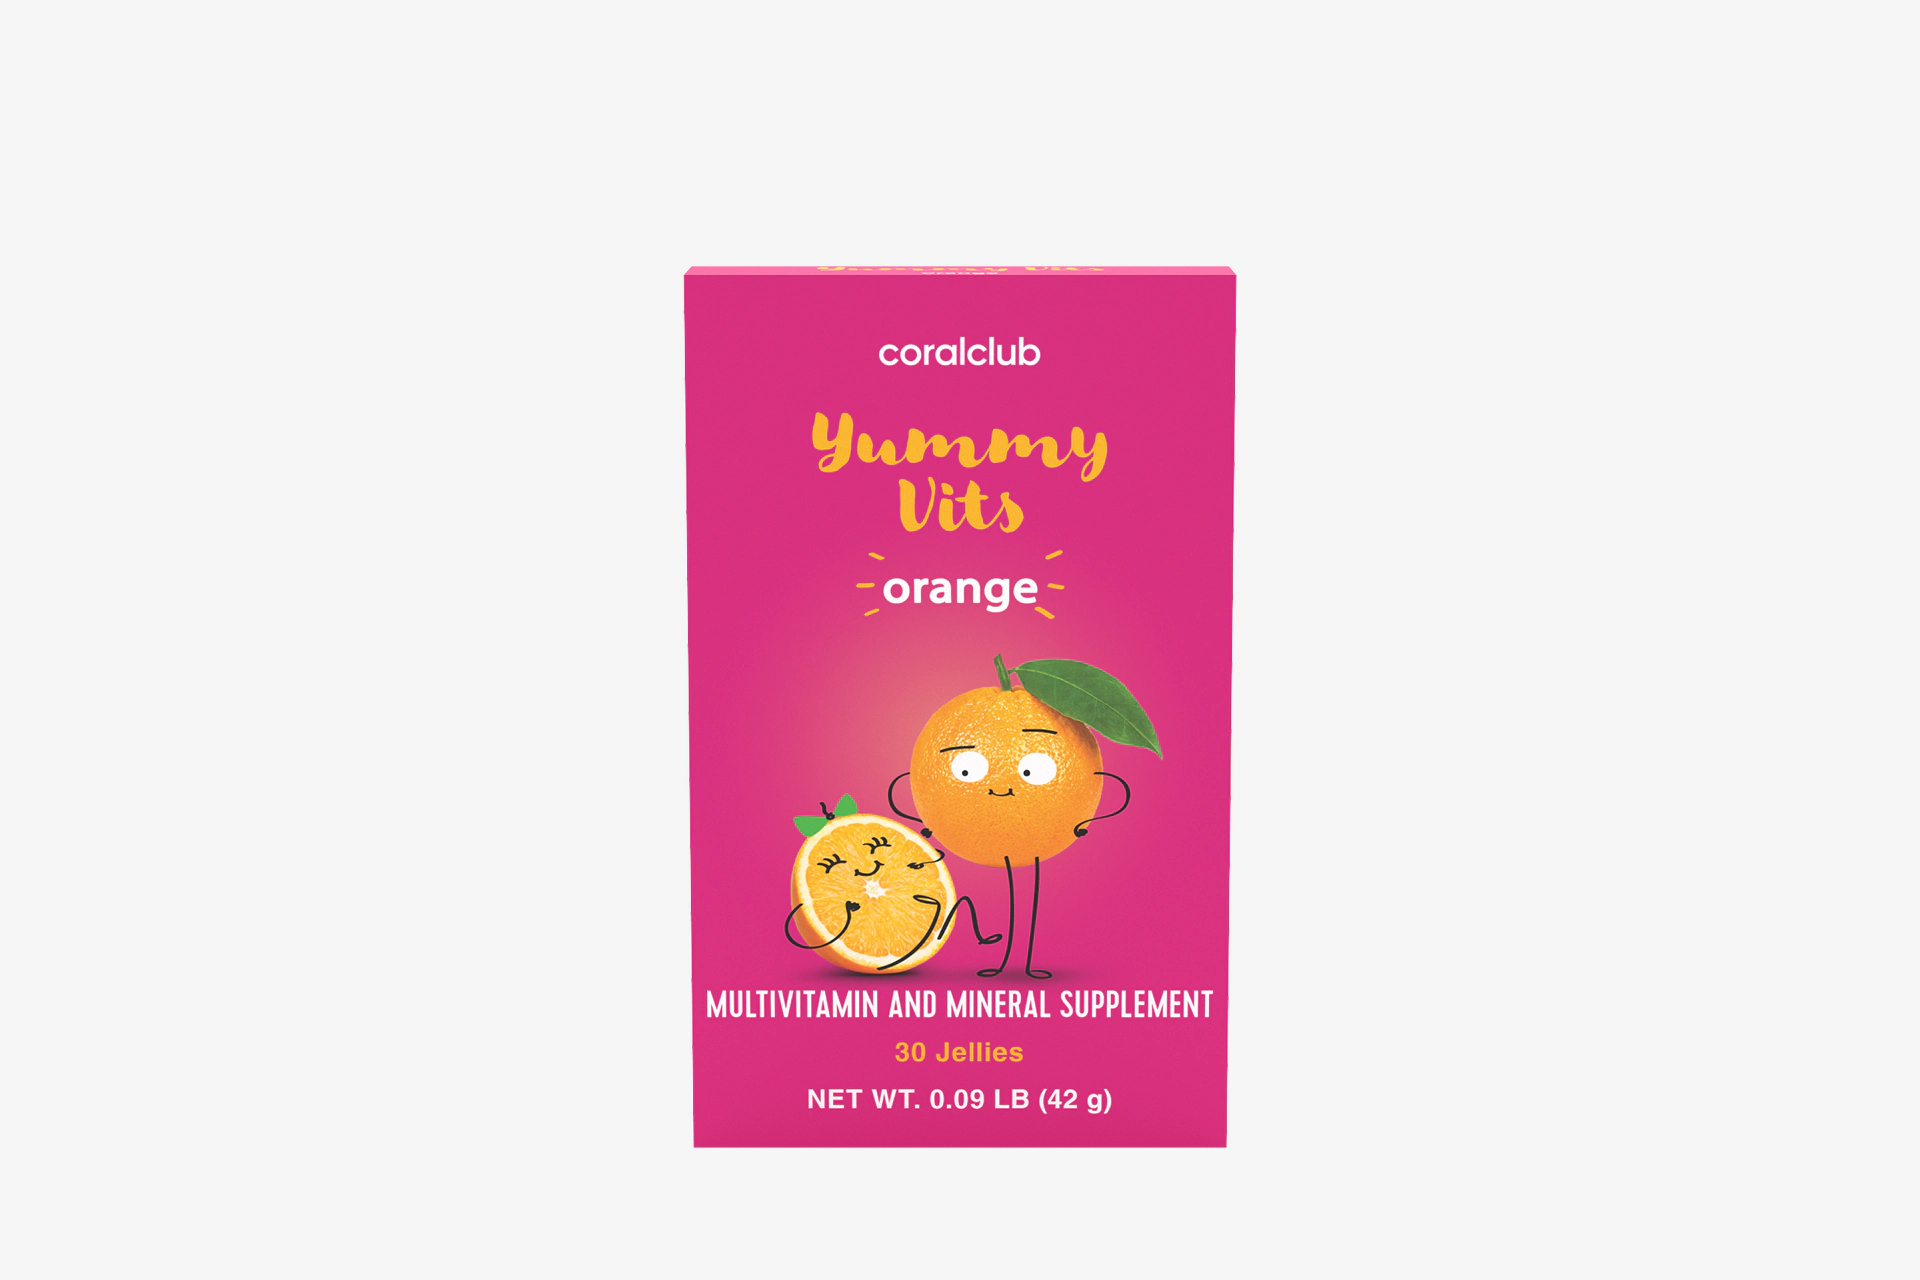 Yummy Vits orange flavor